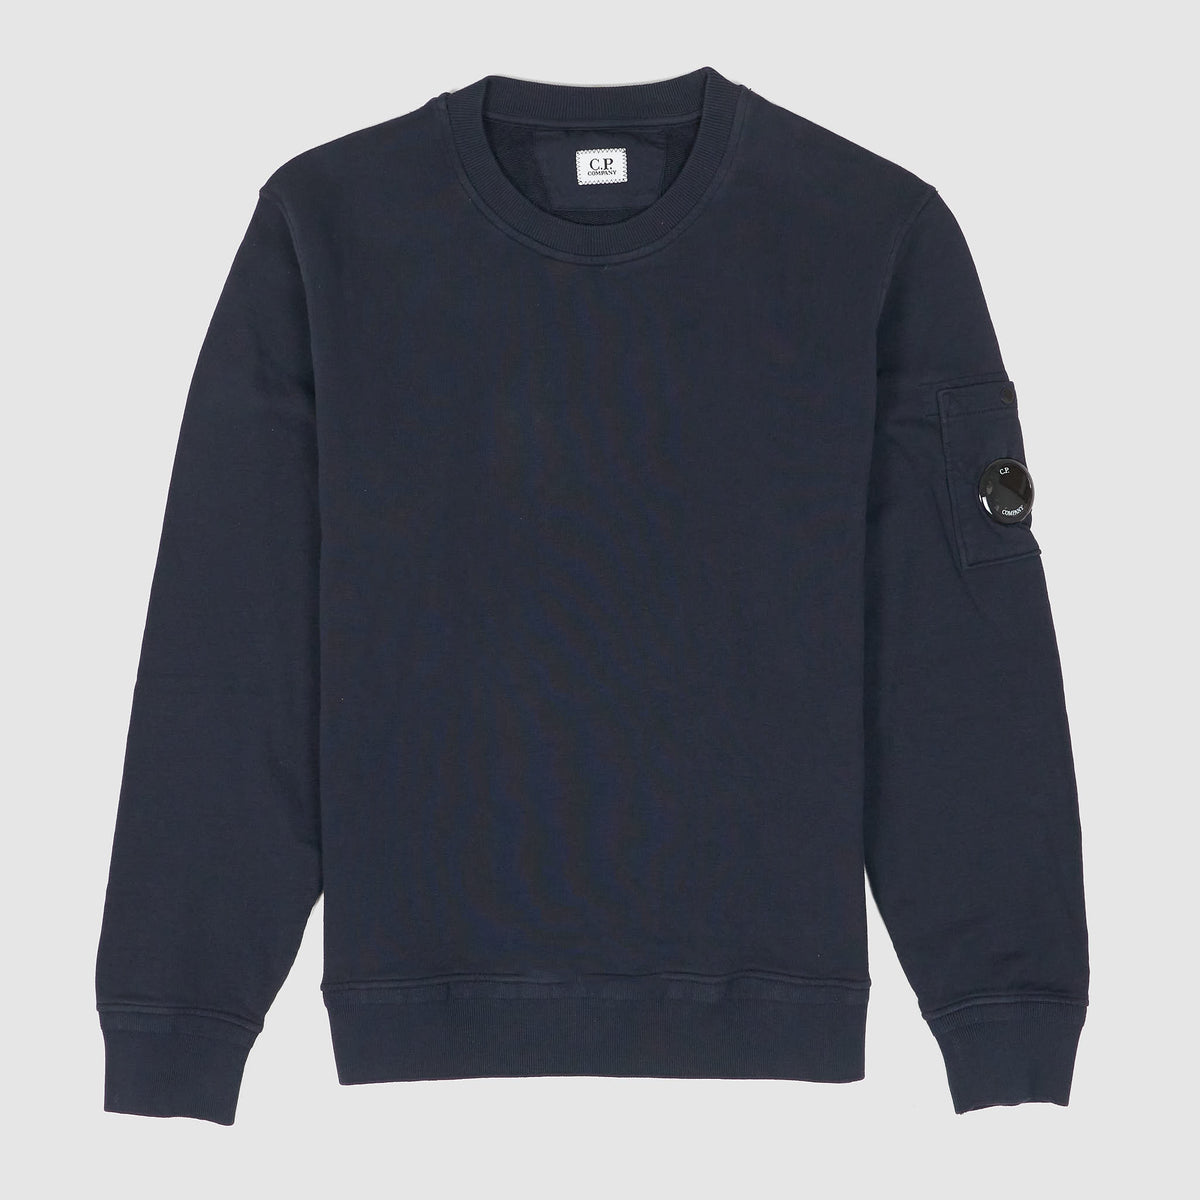 C.P. Company Cotton Fleece Crew Neck Sweater